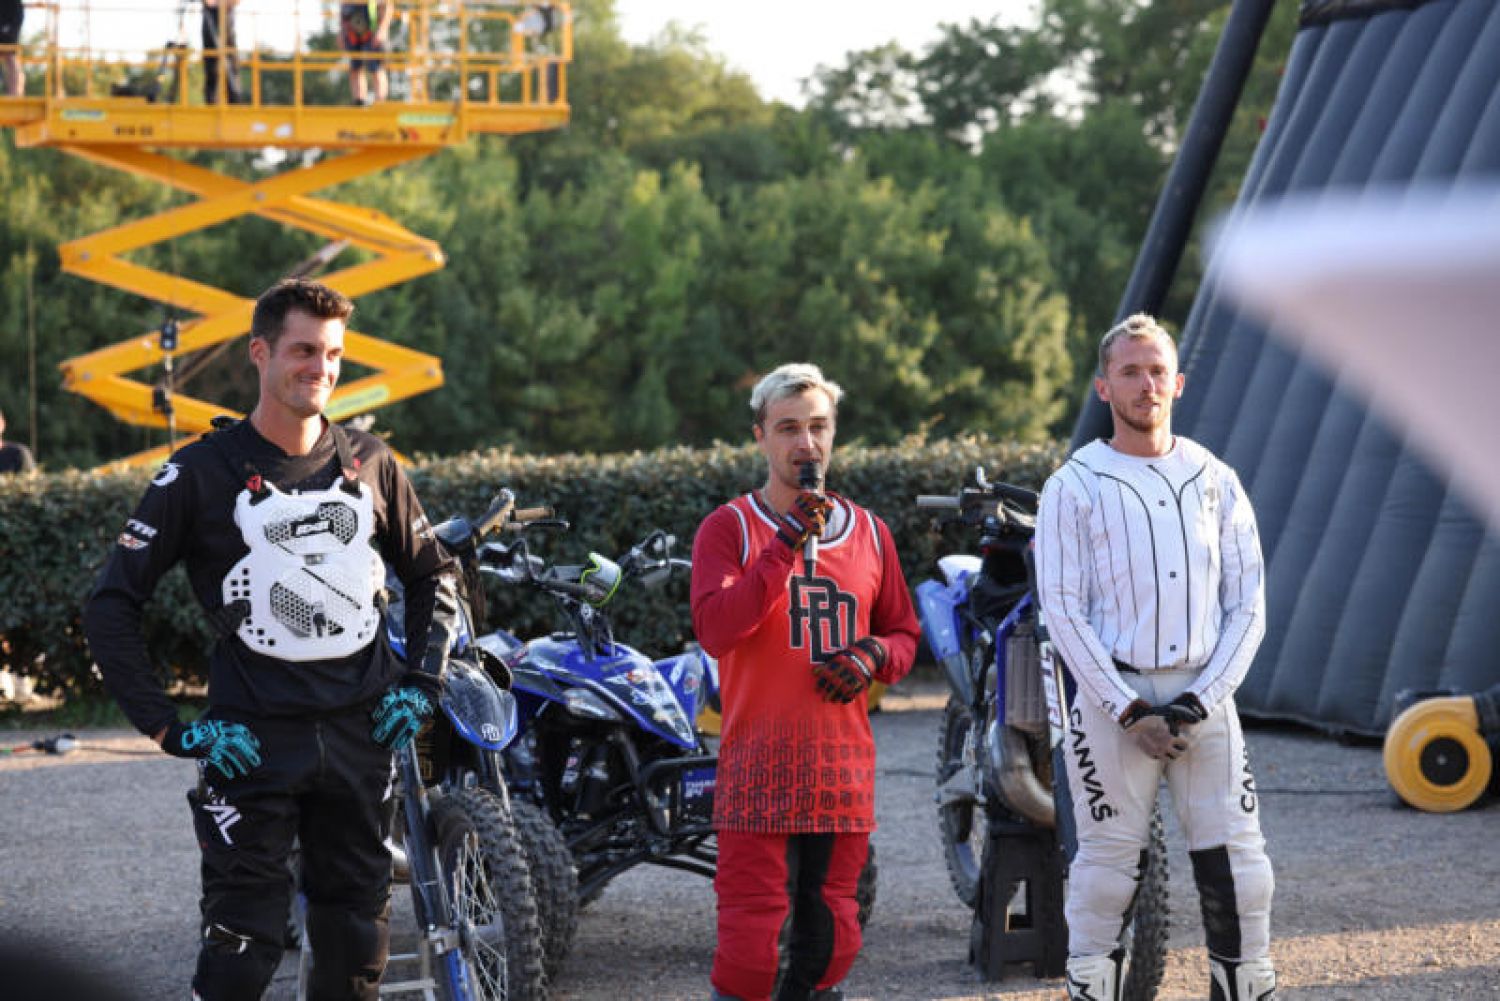 David Rinaldo sait tout faire avec sa moto, il vient encore de le prouver dans la France à un Incroyable Talent sur M6